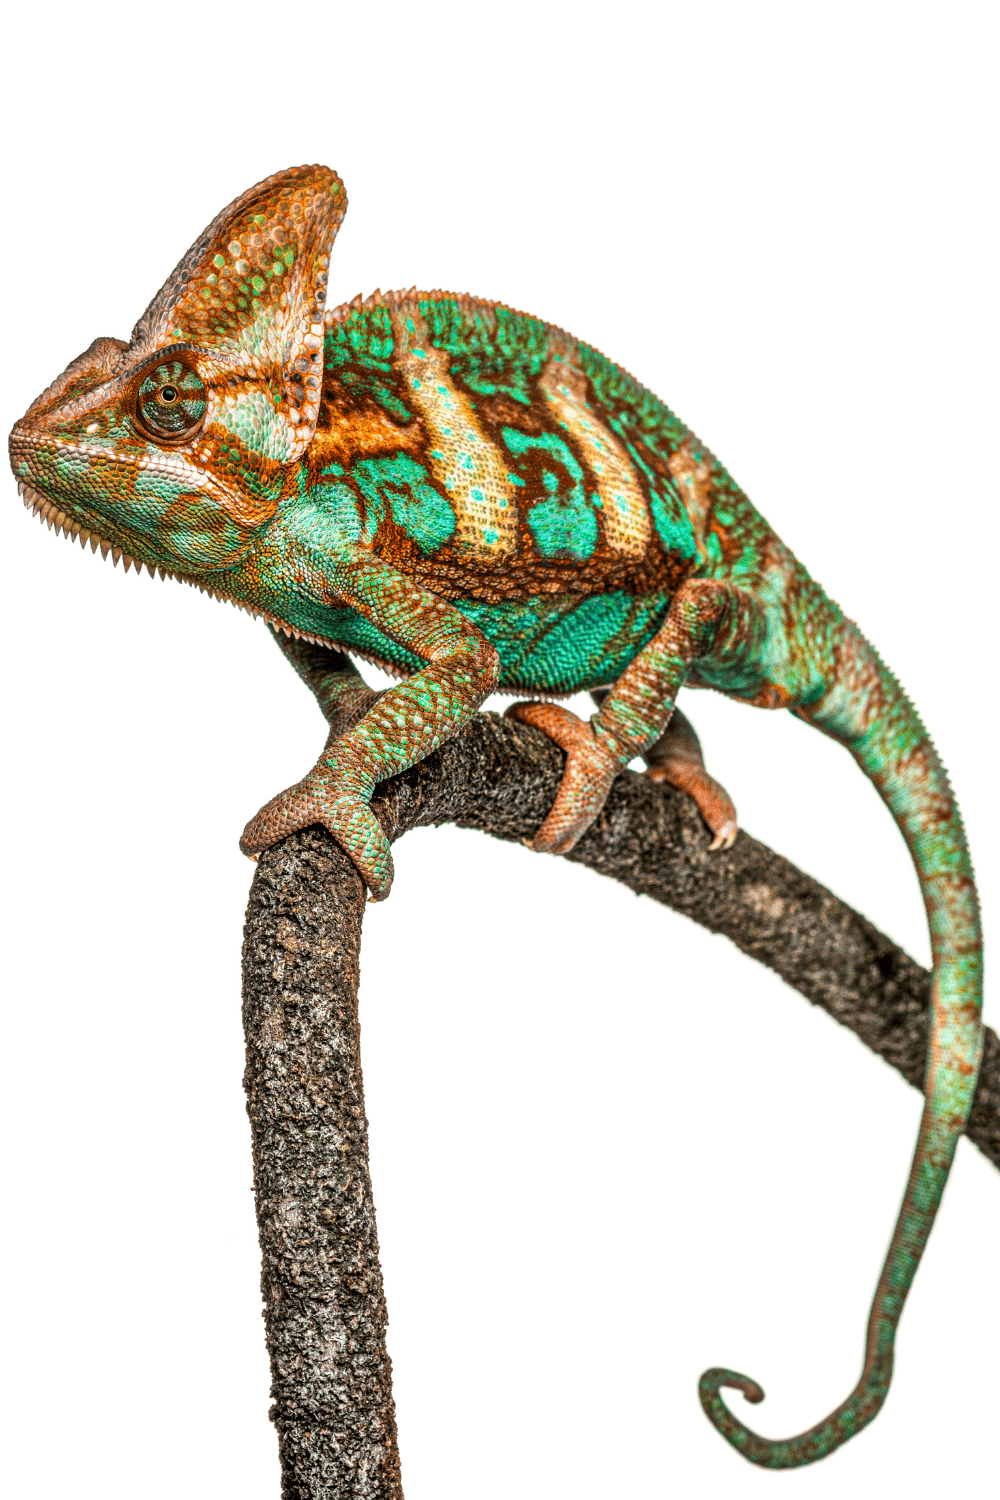 Adult Veiled Chameleons